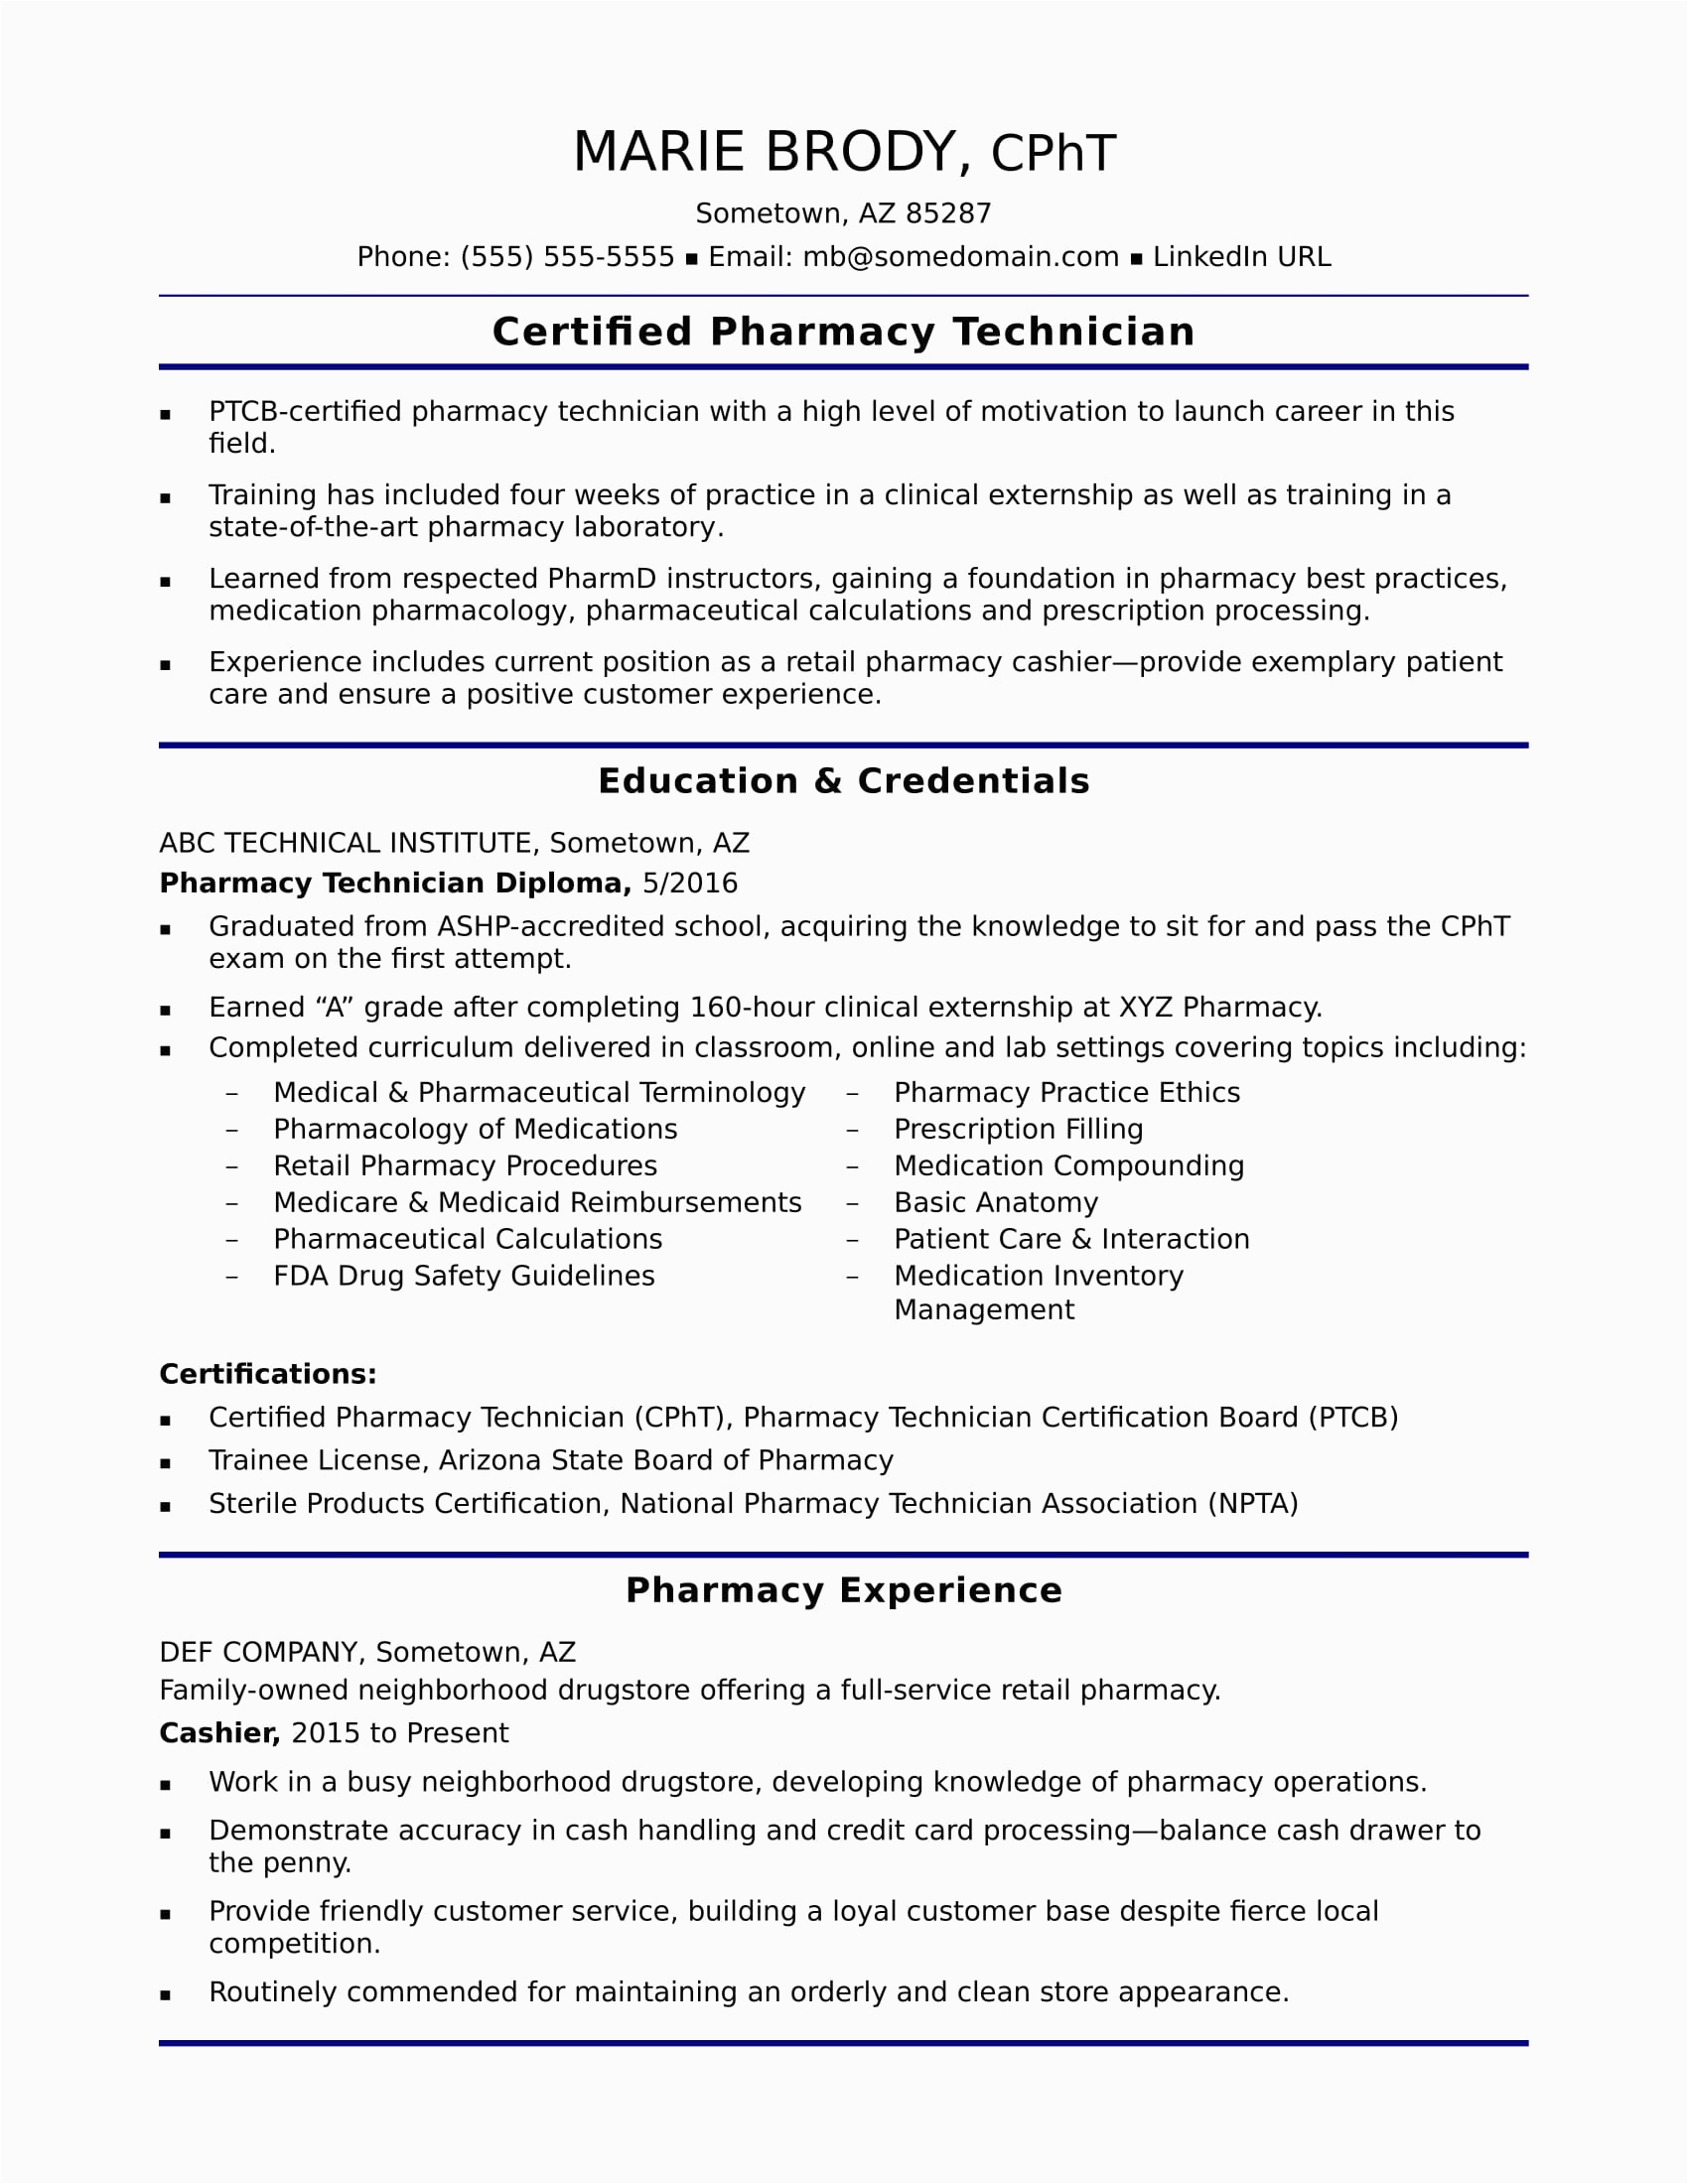 Sample Resume for Pharmacy Technician Objective Entry Level Pharmacy Technician Resume